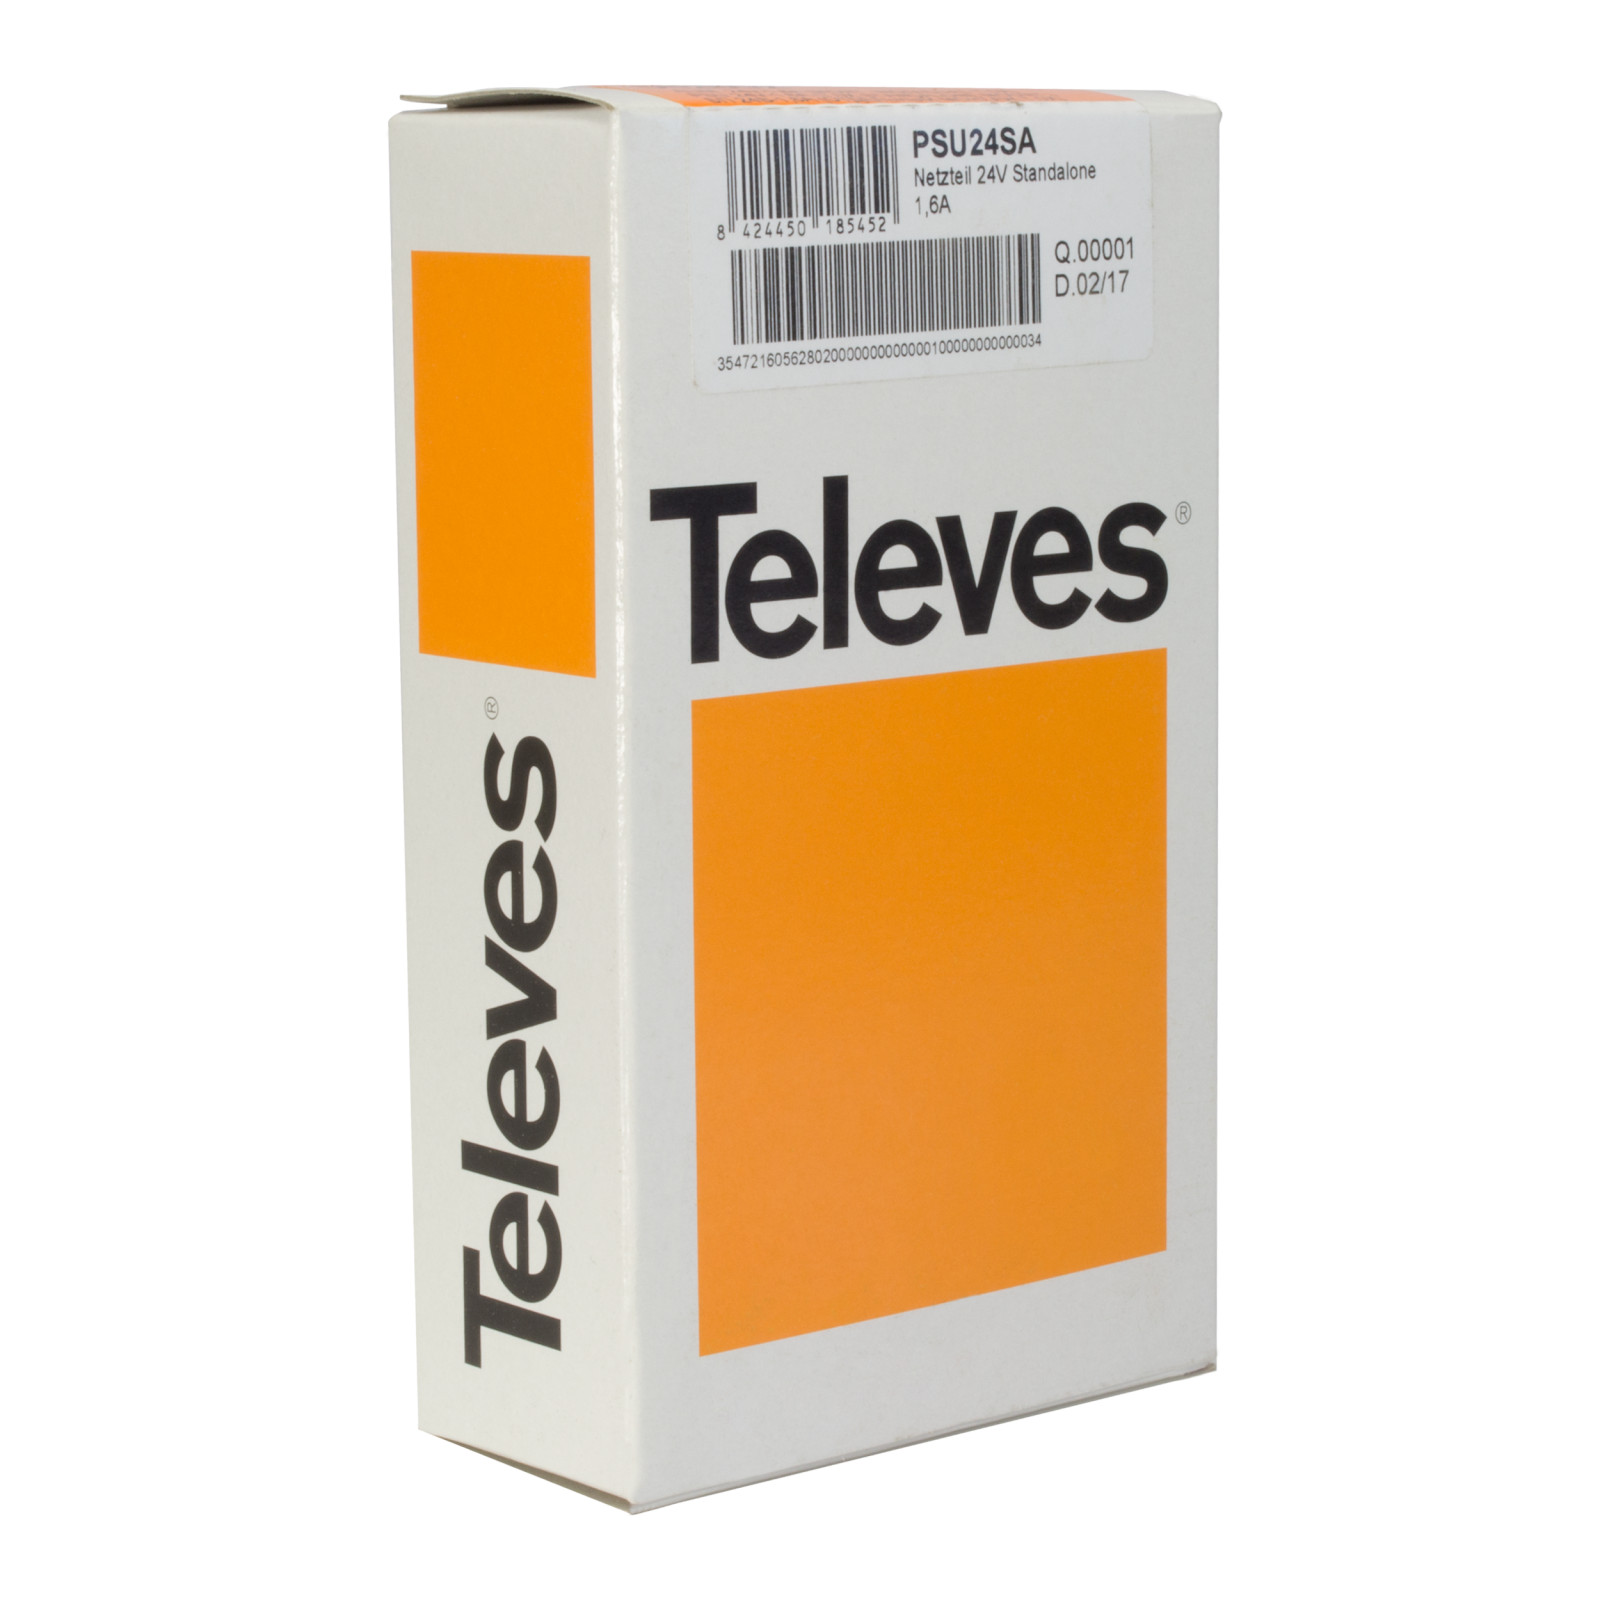 Televes 562802 - блок питания 24V-1,6A для одного модуля T.0X